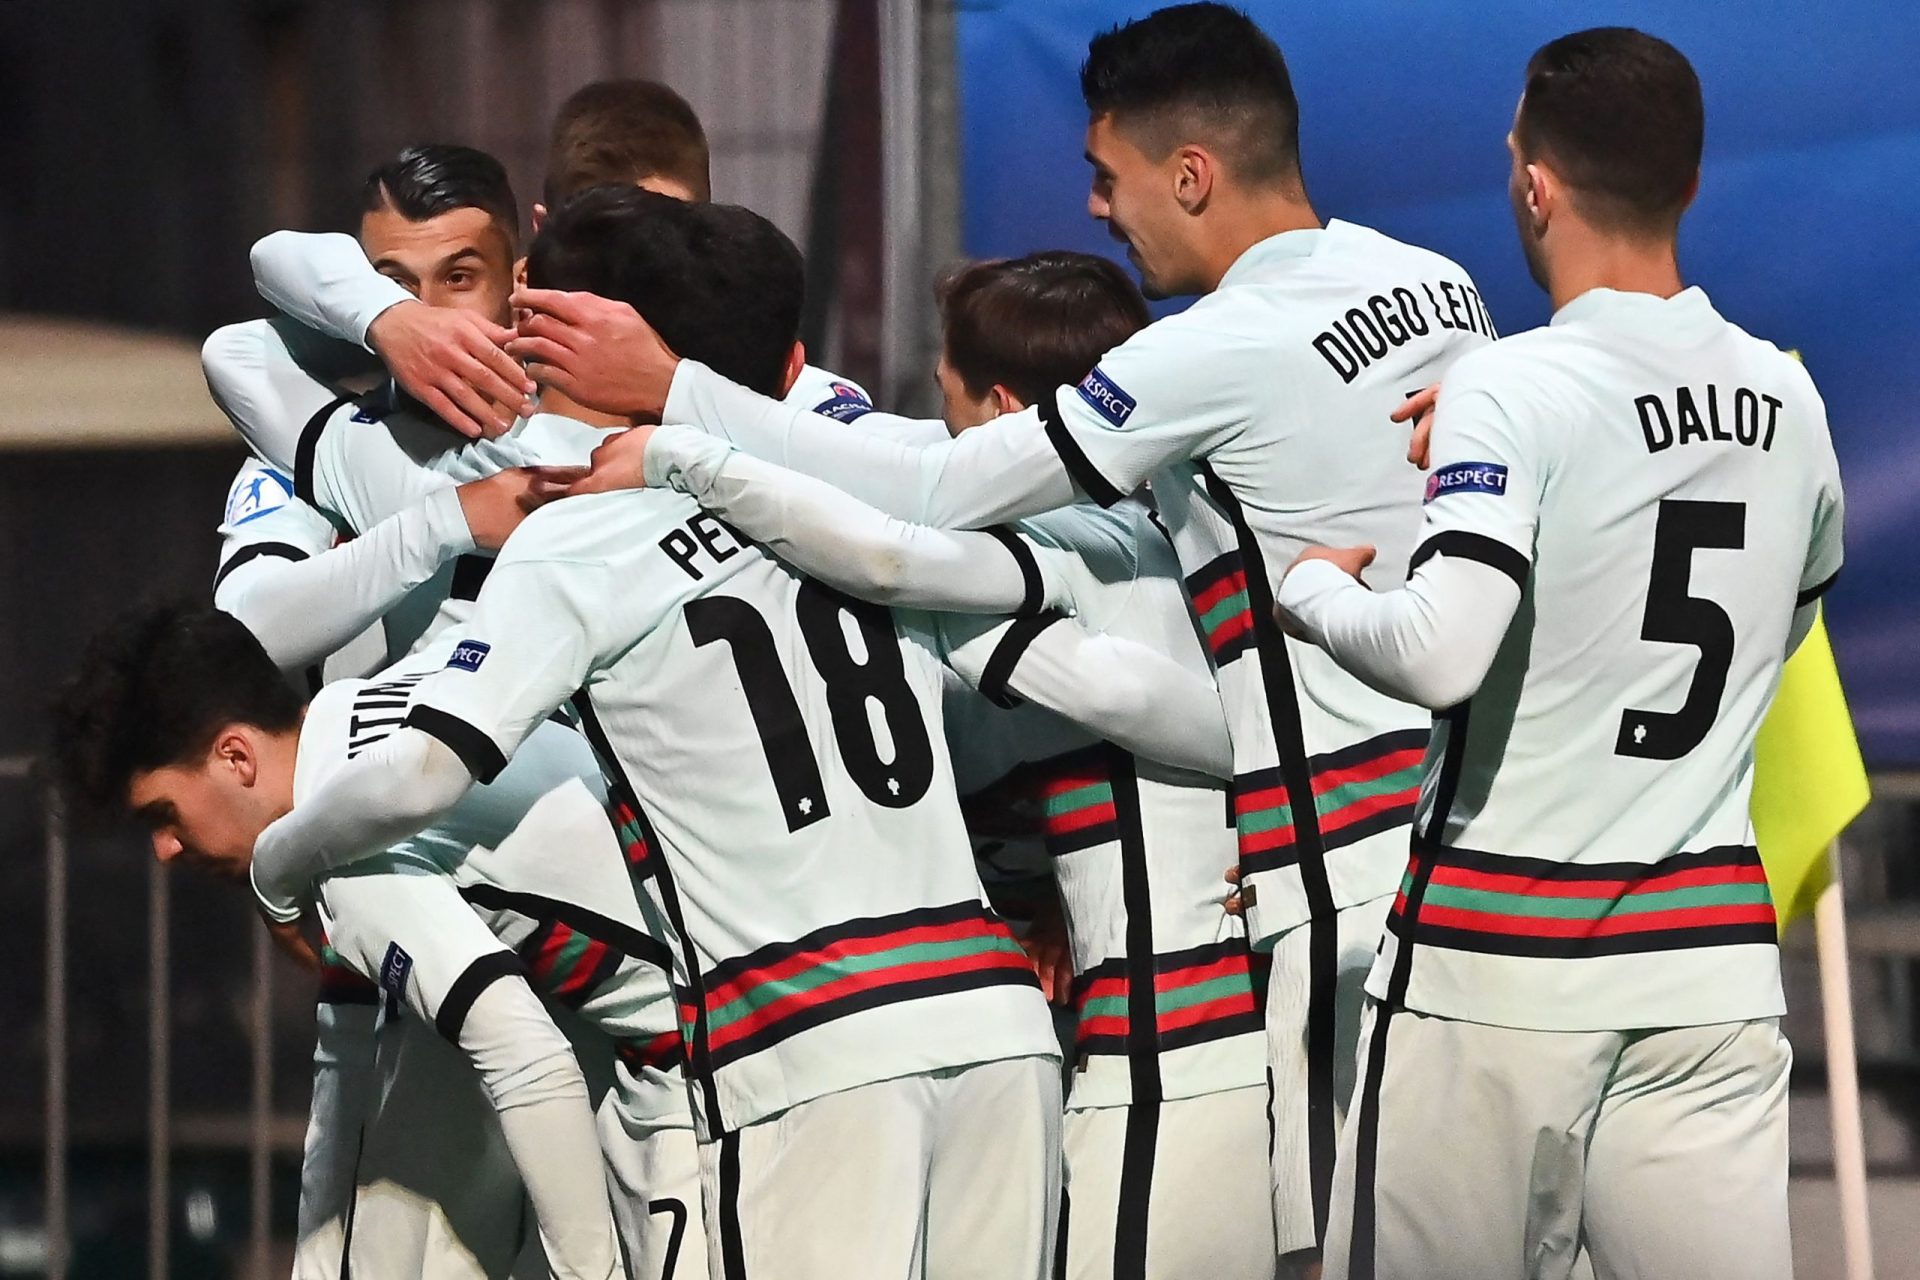 Seleção nacional sub-21 bateu a Croácia no primeiro jogo do Euro 2021